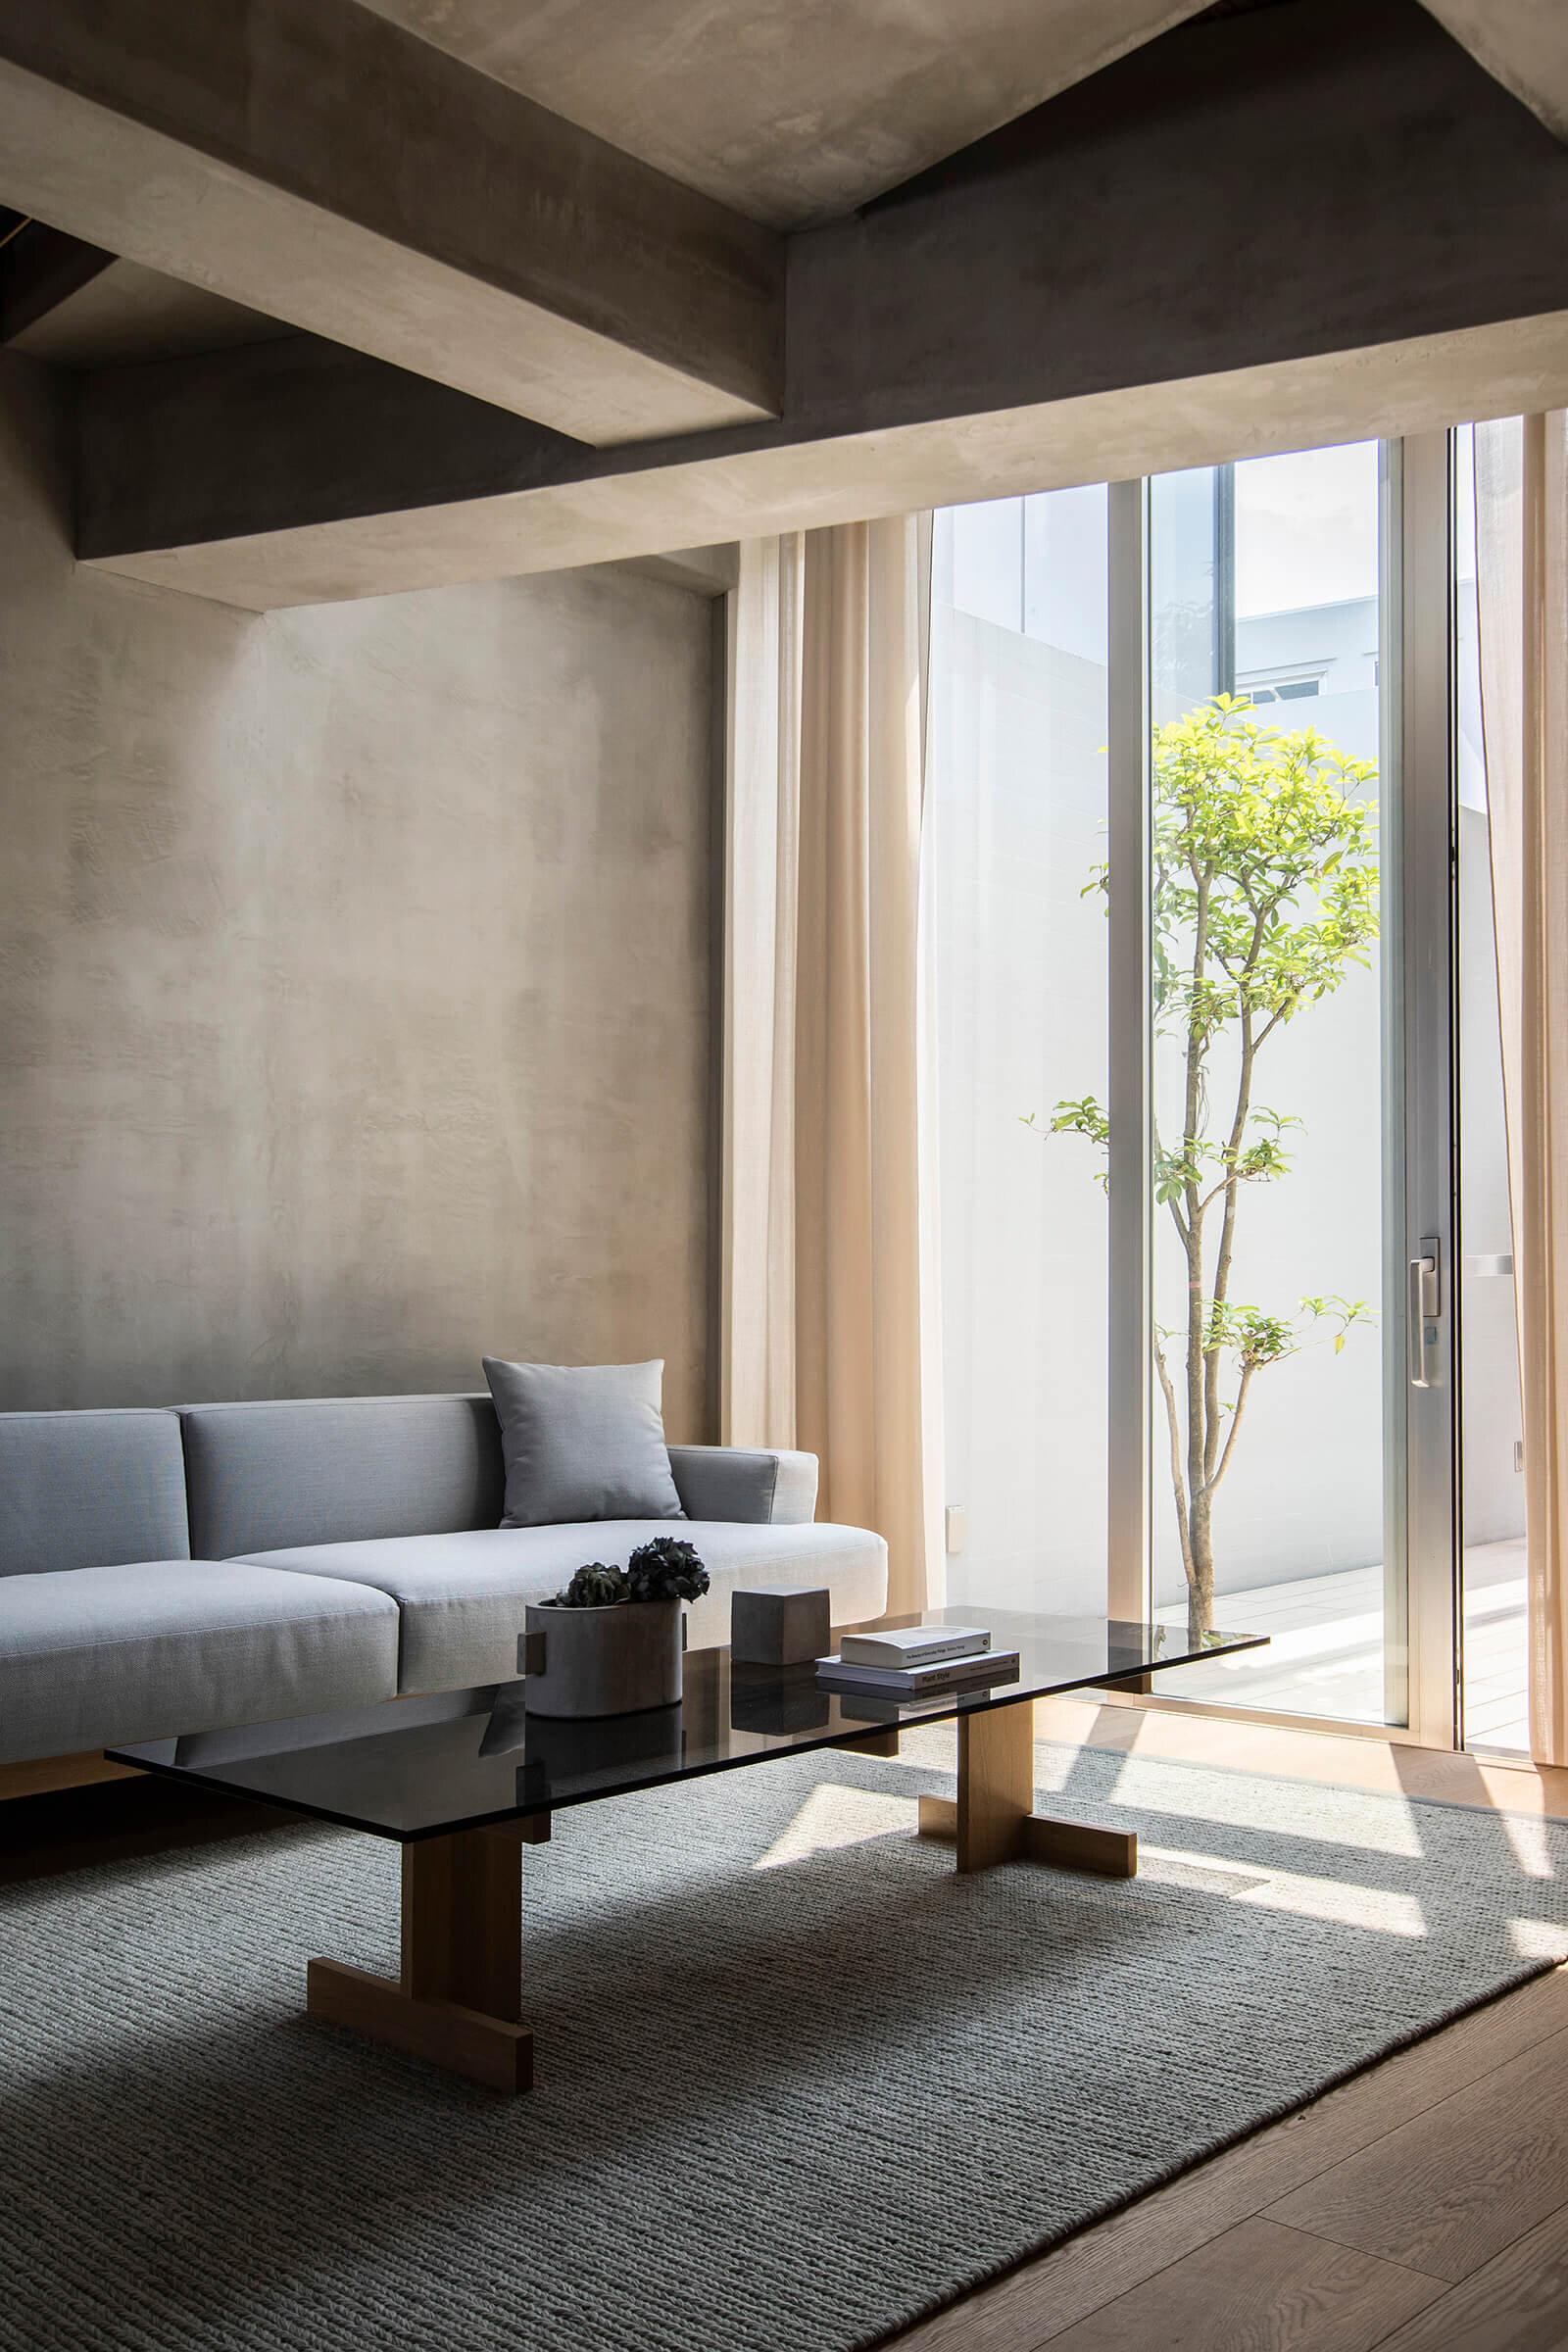 keiji-ashizawa-design-kinuta-terrace-tokyo-japan-residence-interior-design-idreit-4074.jpg